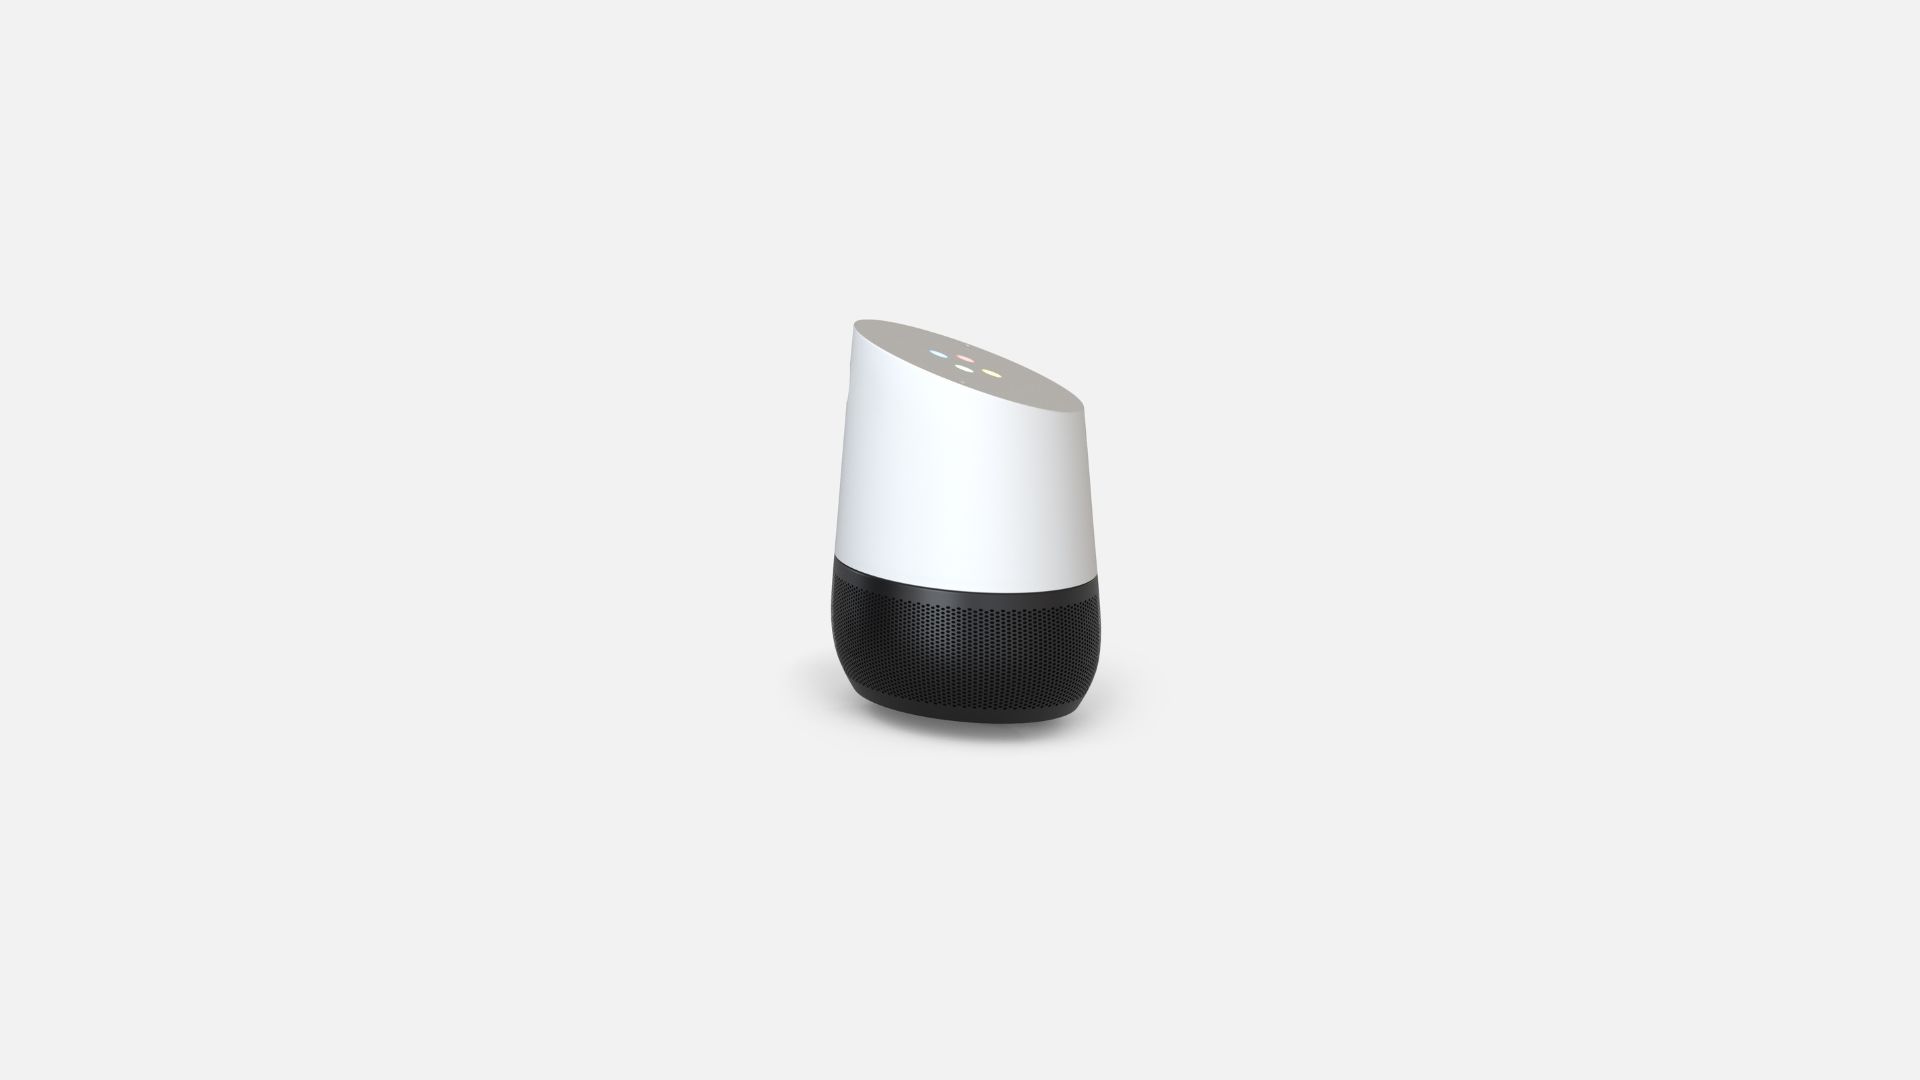 Google Home nhà thông minh: 
Bạn đang muốn tạo ra một ngôi nhà thông minh hiện đại và thuận tiện? Google Home đã có mặt và sẵn sàng đáp ứng nhu cầu của bạn. Với công nghệ Google Assistant, bạn có thể điều khiển các thiết bị nhà thông minh và truy cập vào thông tin, lịch trình và bài hát yêu thích của mình chỉ bằng giọng nói. Với thiết bị này, bạn có thể kiểm soát được cảm giác của ngôi nhà và tạo ra một không gian sống thật hoàn hảo.